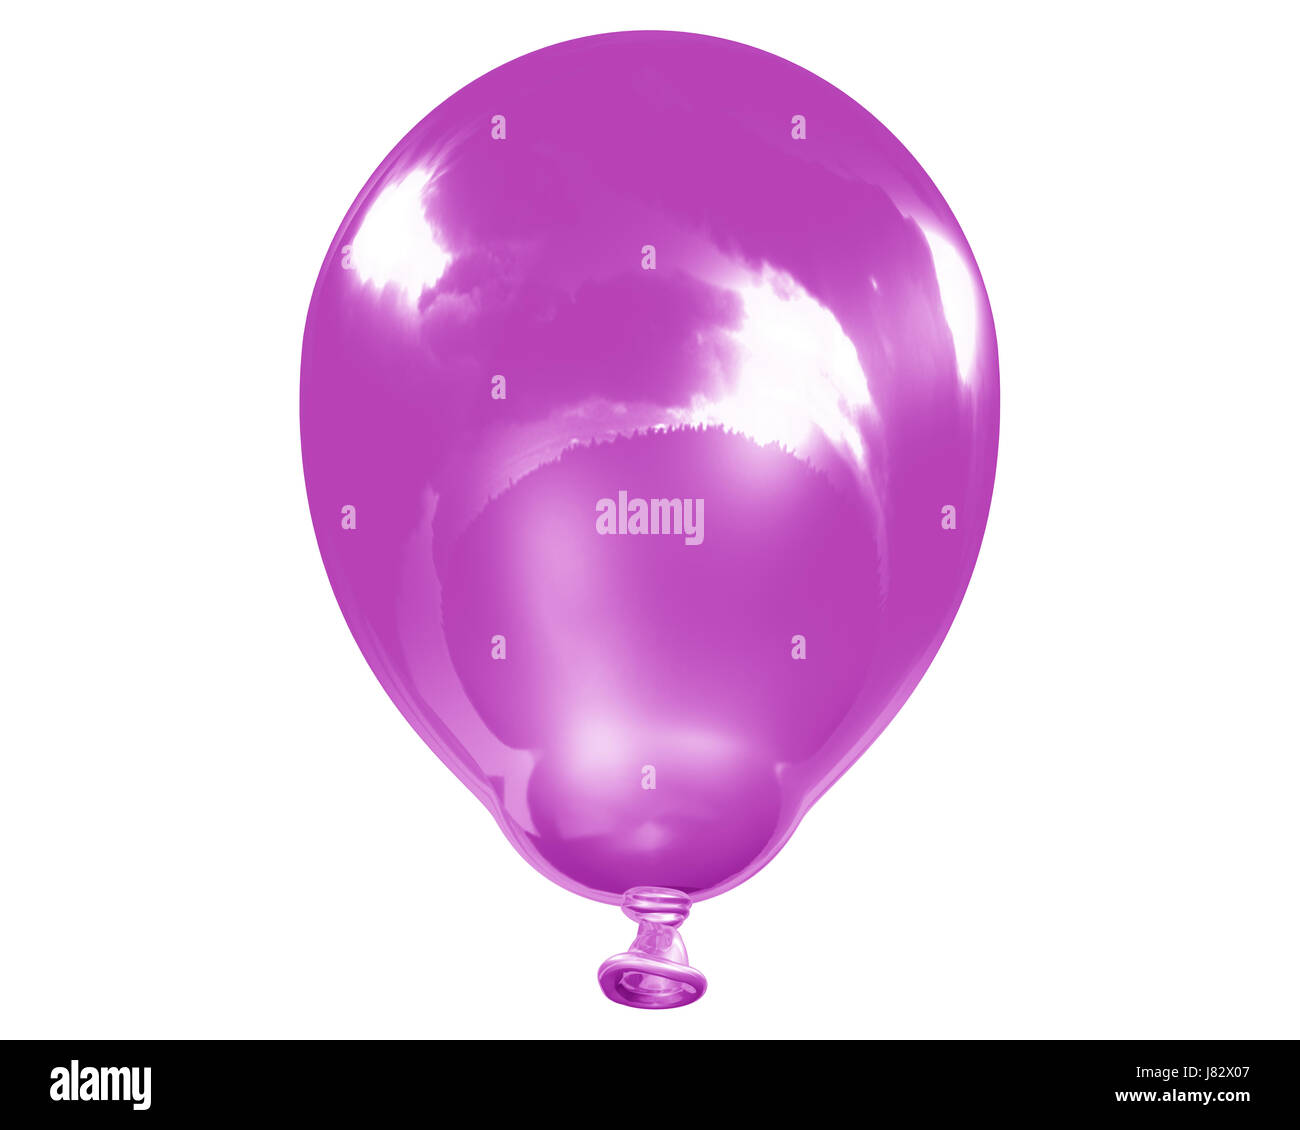 celebrate reveling revels celebrates party celebration balloon decoration Stock Photo